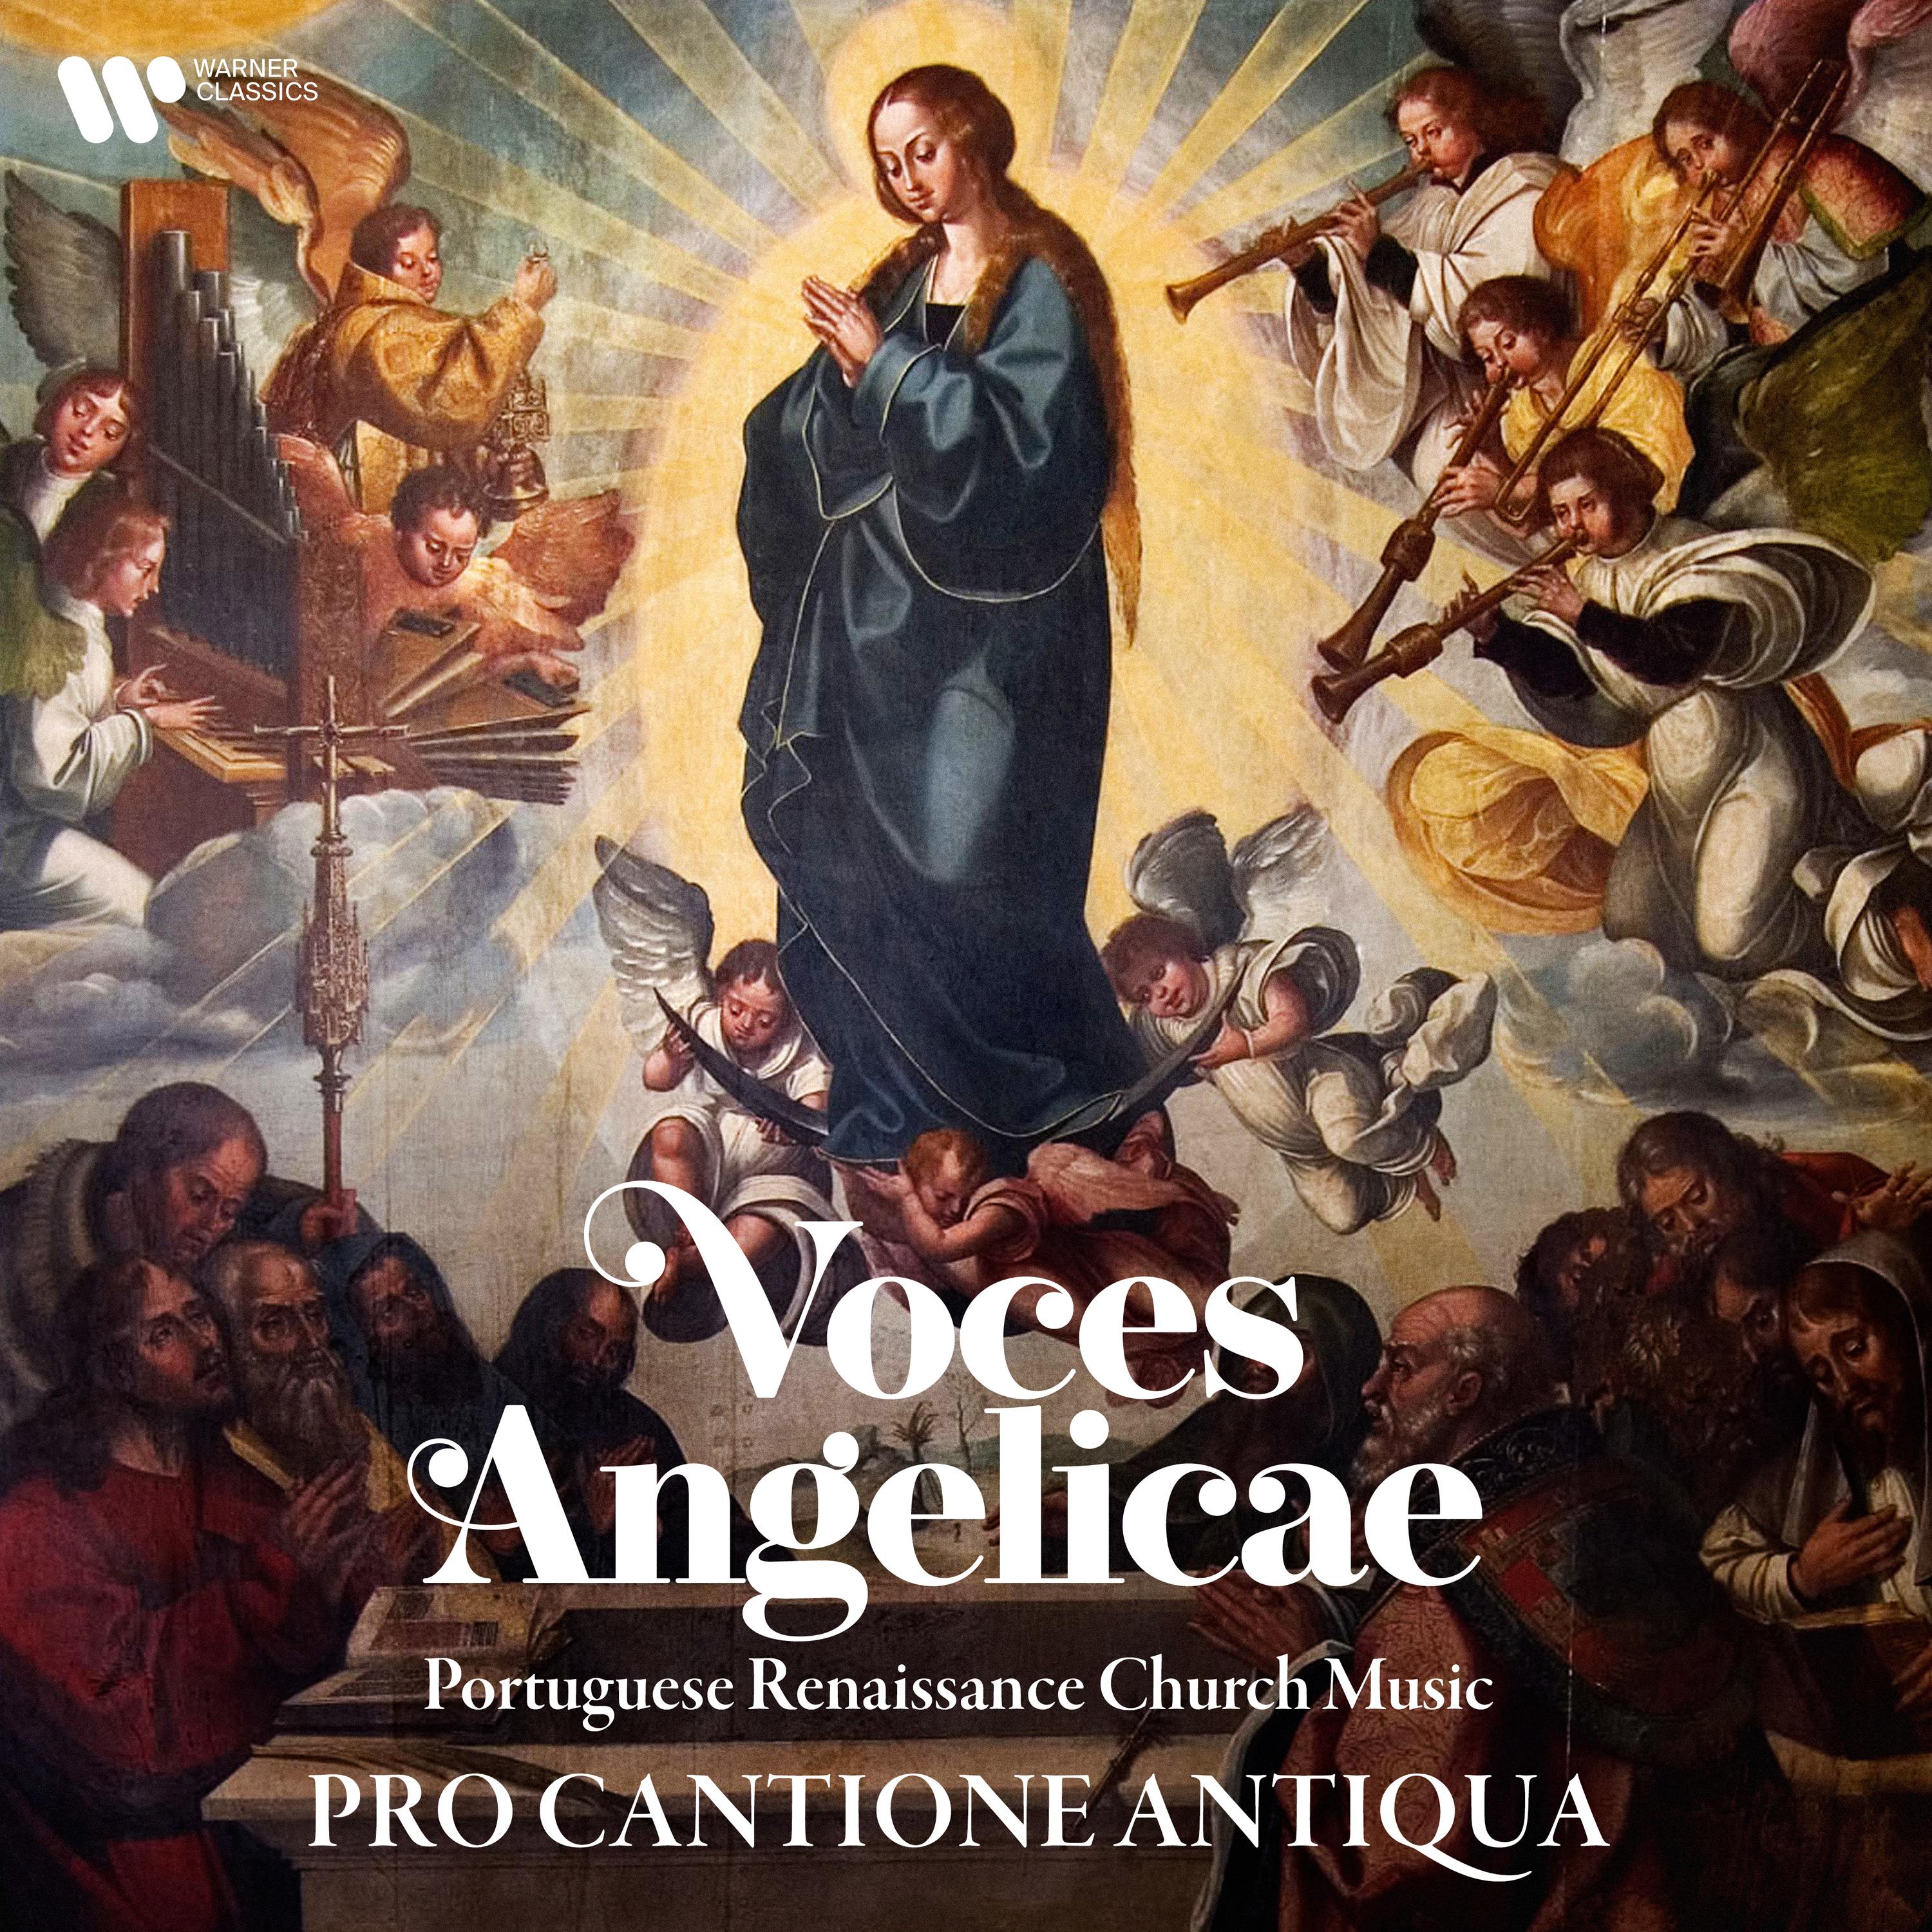 Pro Cantione Antiqua - Liber primus missarum, Missa No. 4 